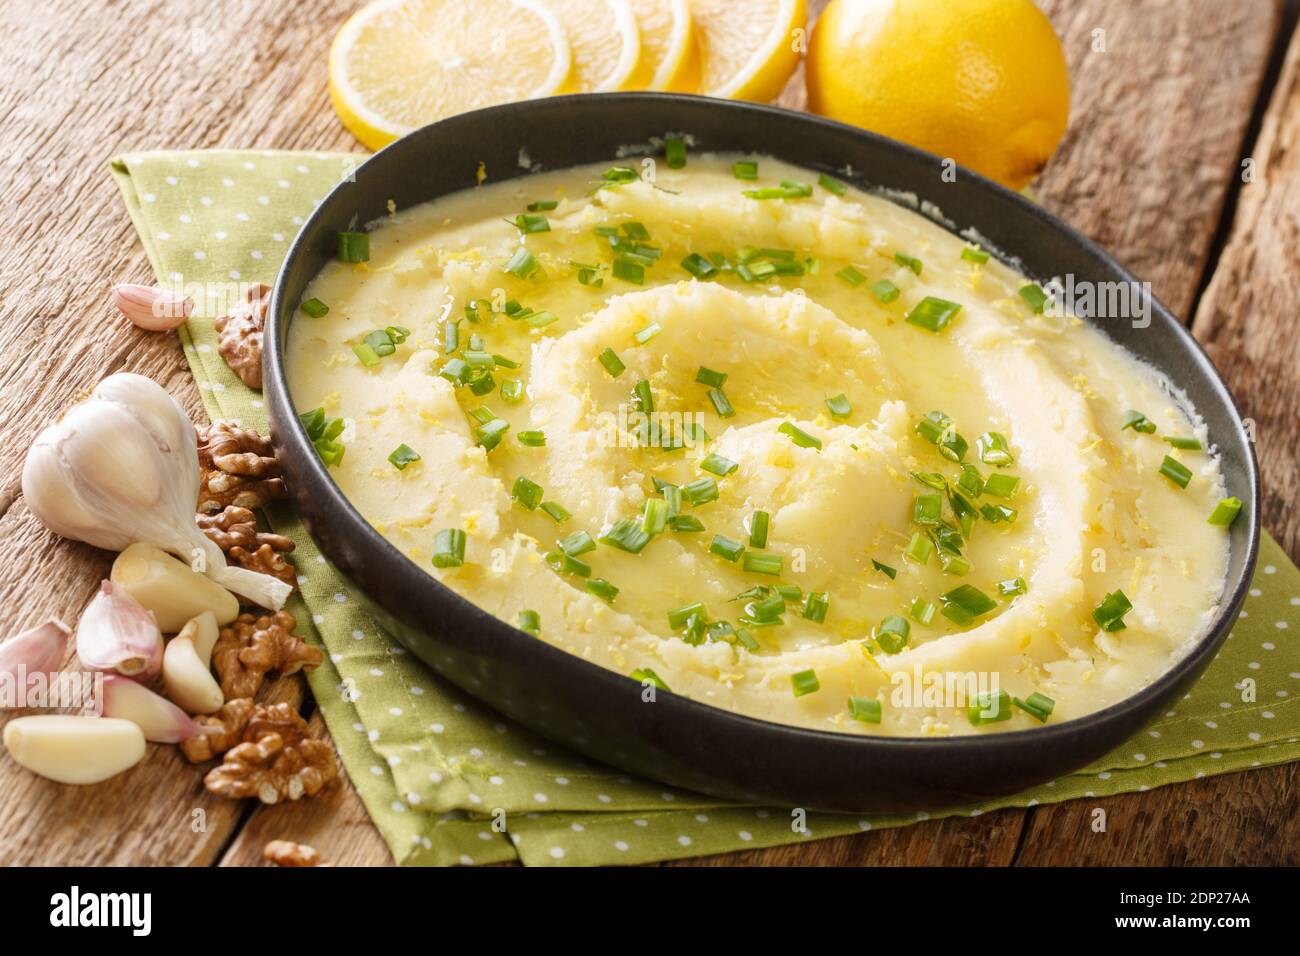 Delizioso Skordalia greco a base di purè di patate con aglio, limone, noci e olio d'oliva primo piano in un piatto sul tavolo. Orizzontale Foto Stock